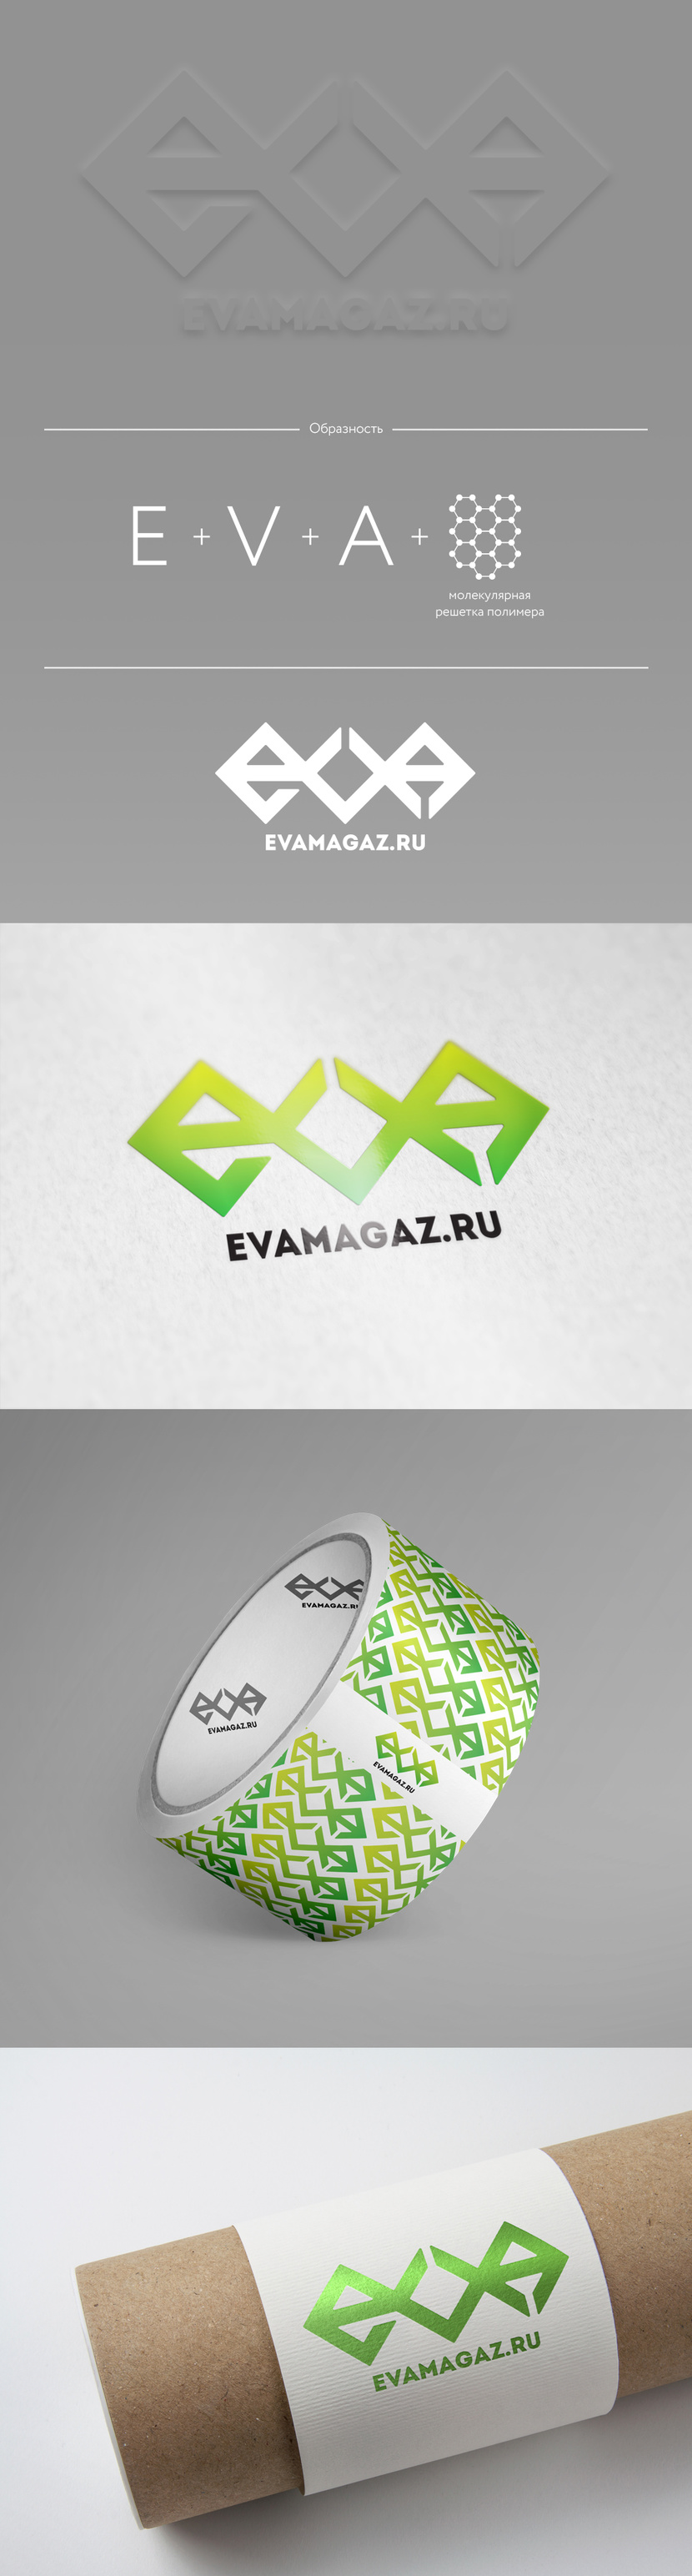 Еще вариант, но уже с ромбами - Логотип и фирменный стиль для интернет-магазина автомобильных EVA ковриков